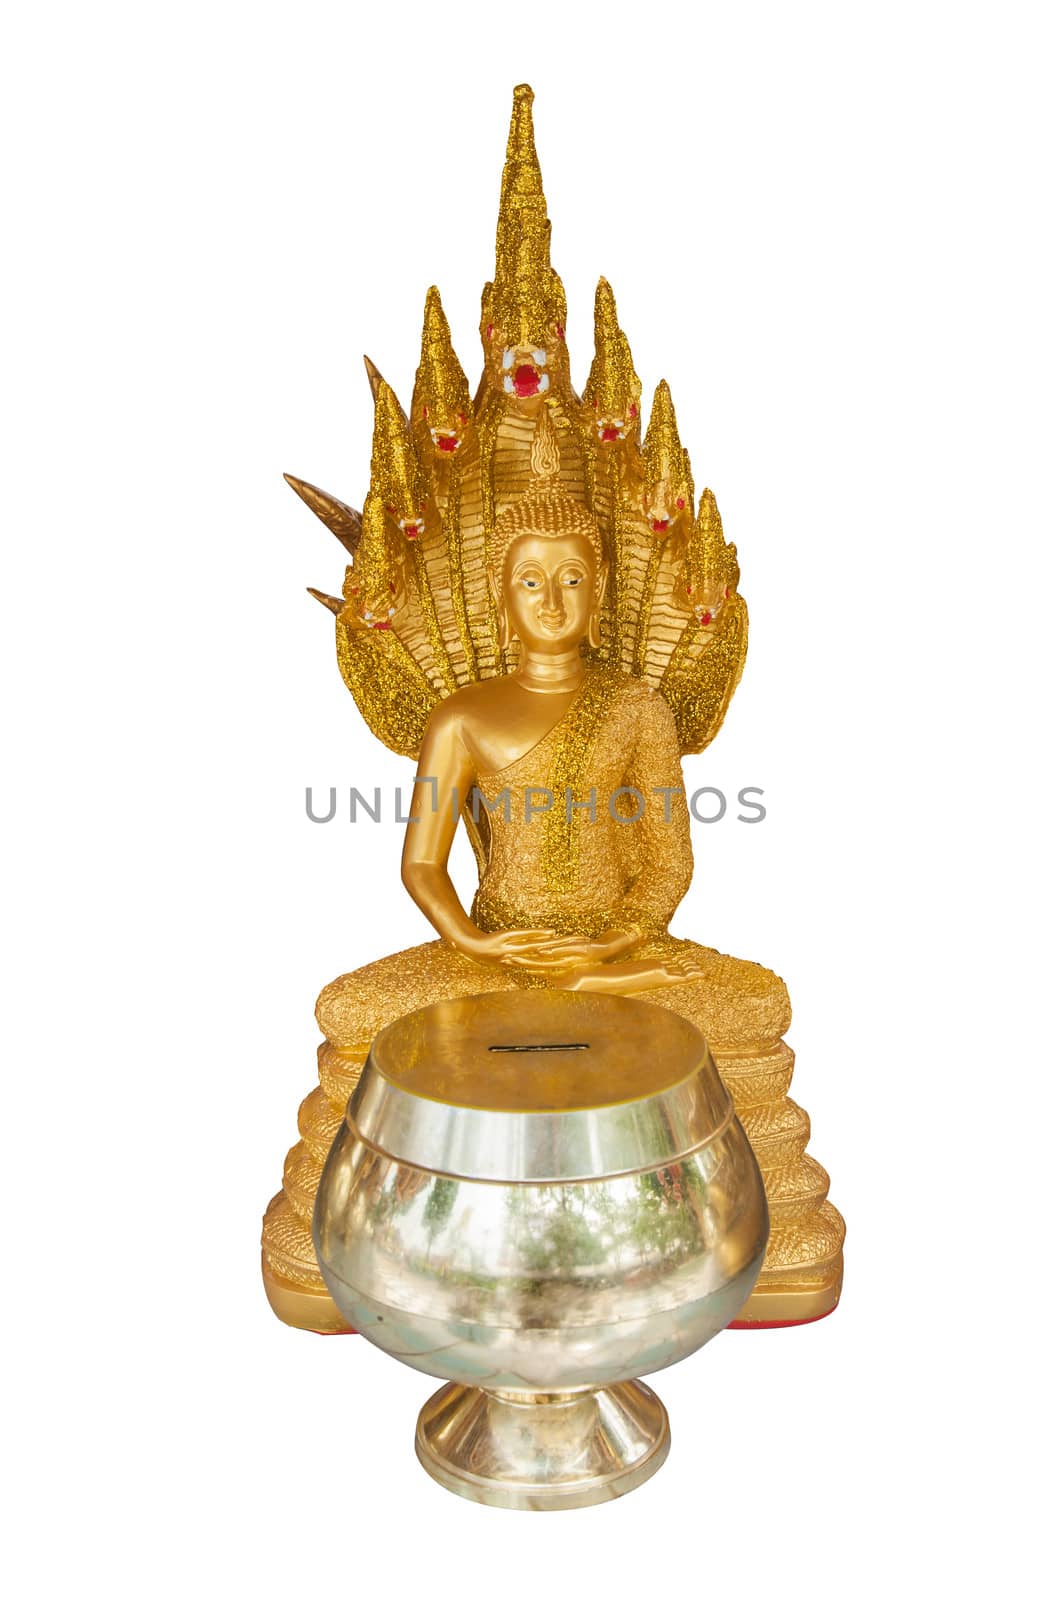 Buddha gold statue